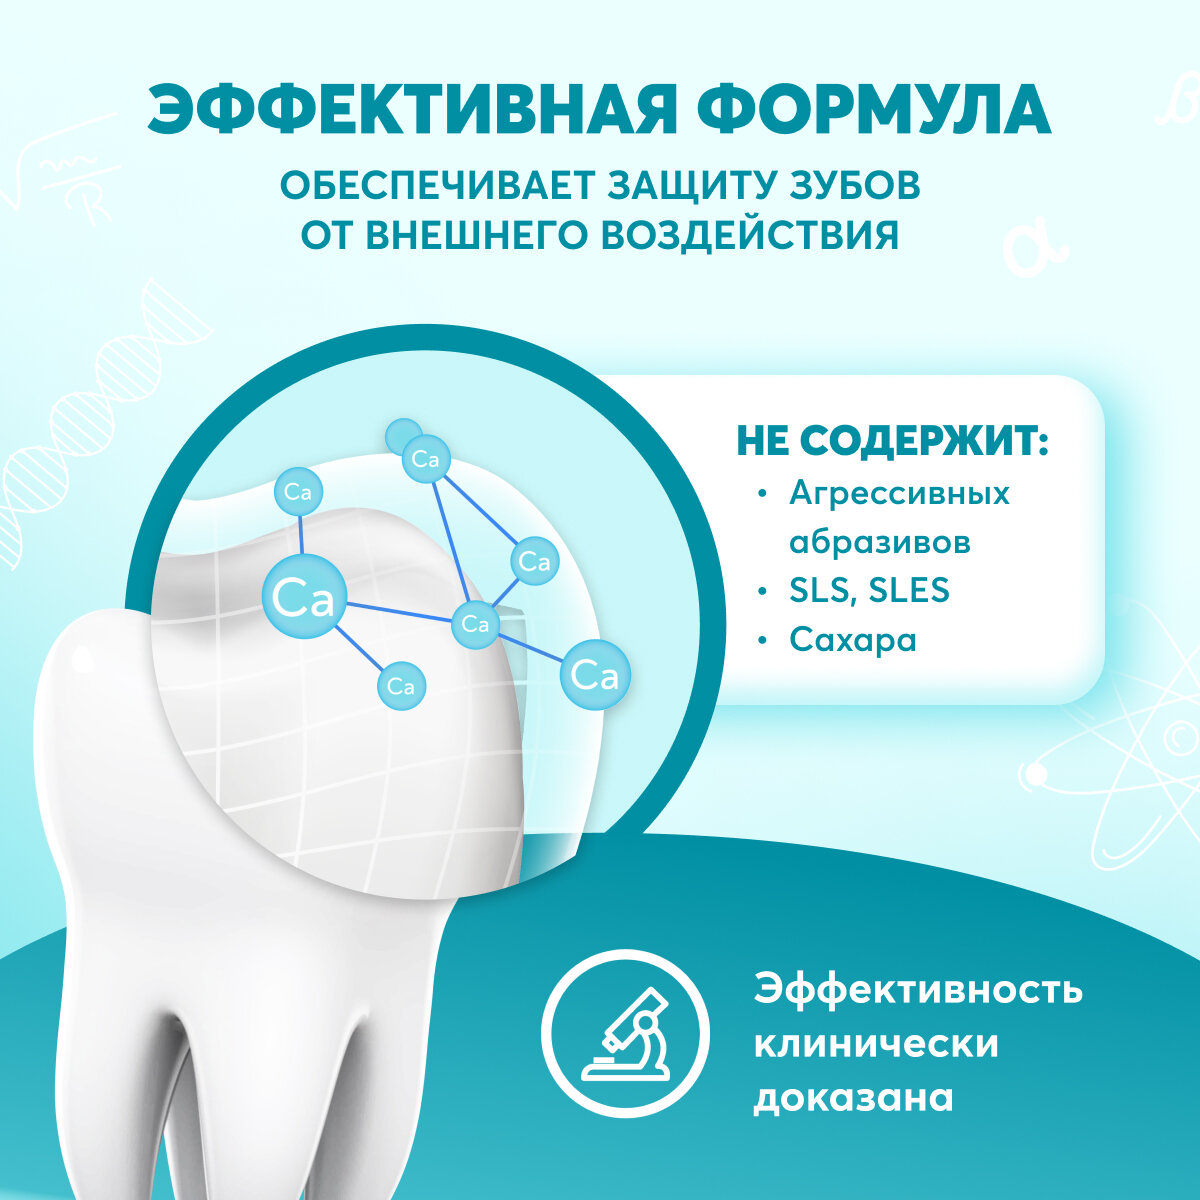 Детская зубная паста PRESIDENT 6+ лет Жвачка, 50 г